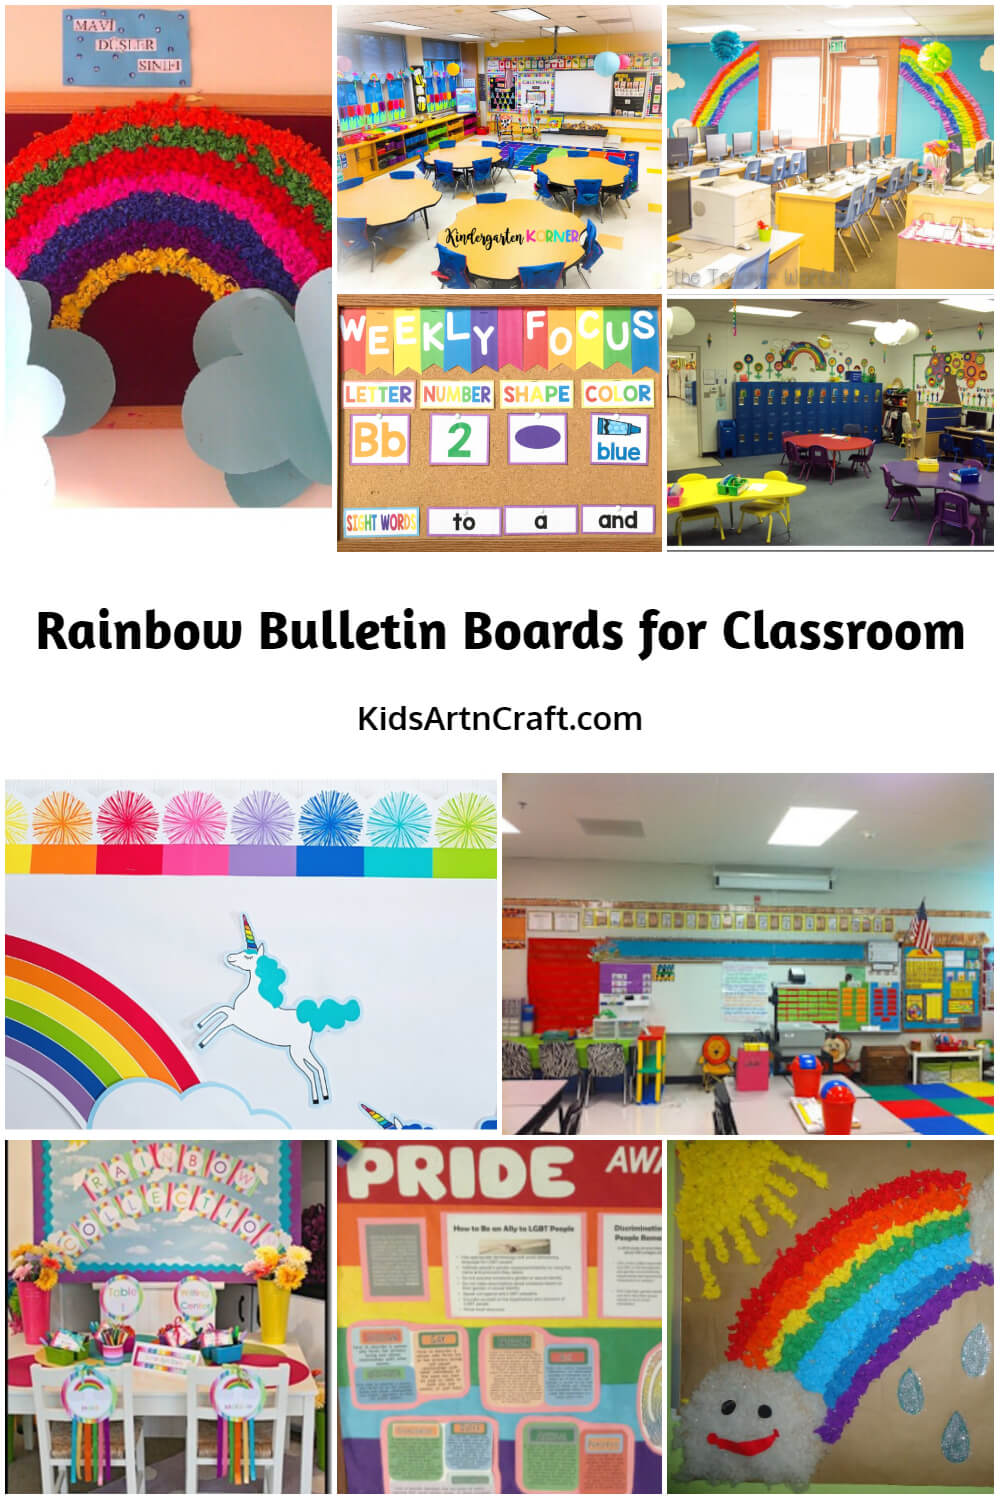 Rainbow Bulletin Boards for Classroom